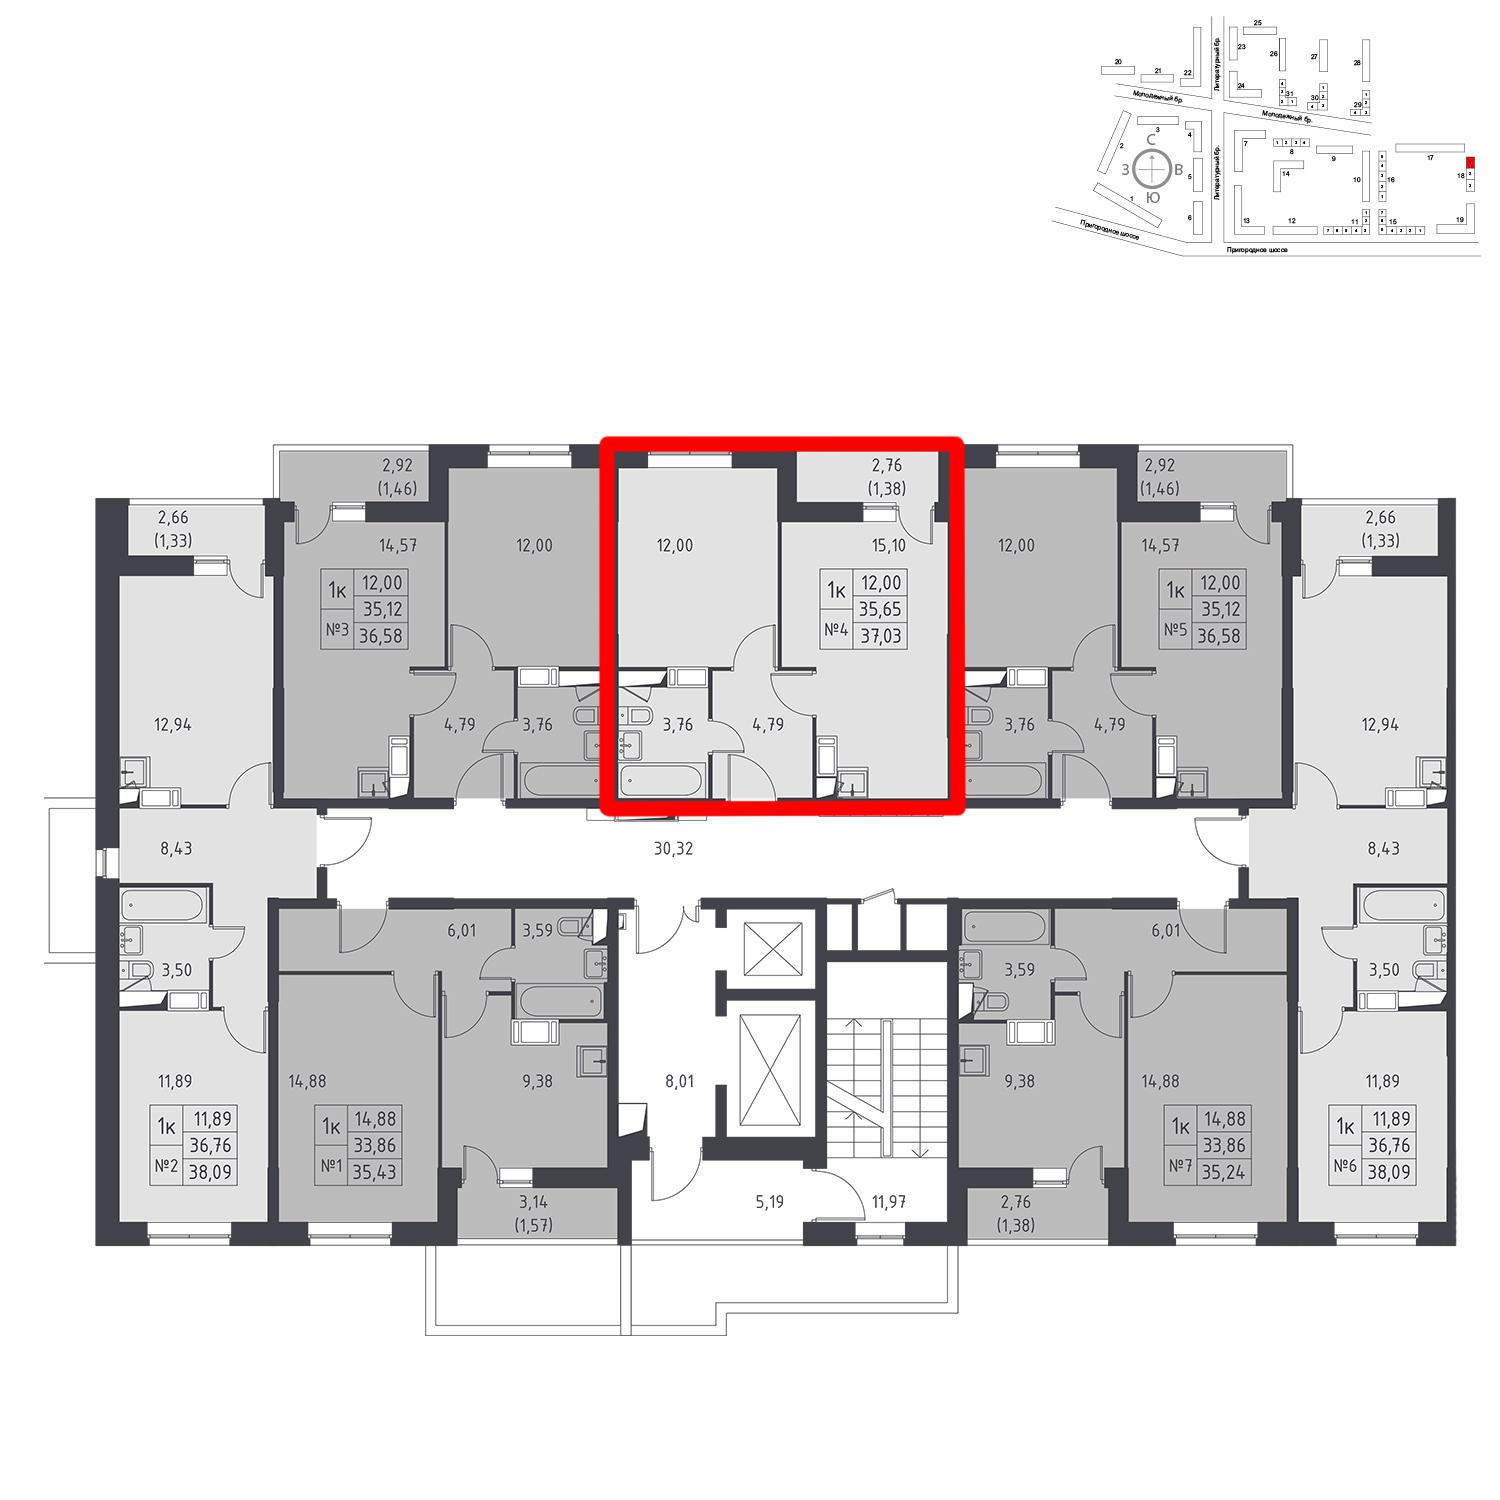 Продаётся 1-комнатная квартира в новостройке 37.0 кв.м. этаж 12/17 за 3 942 140 руб 